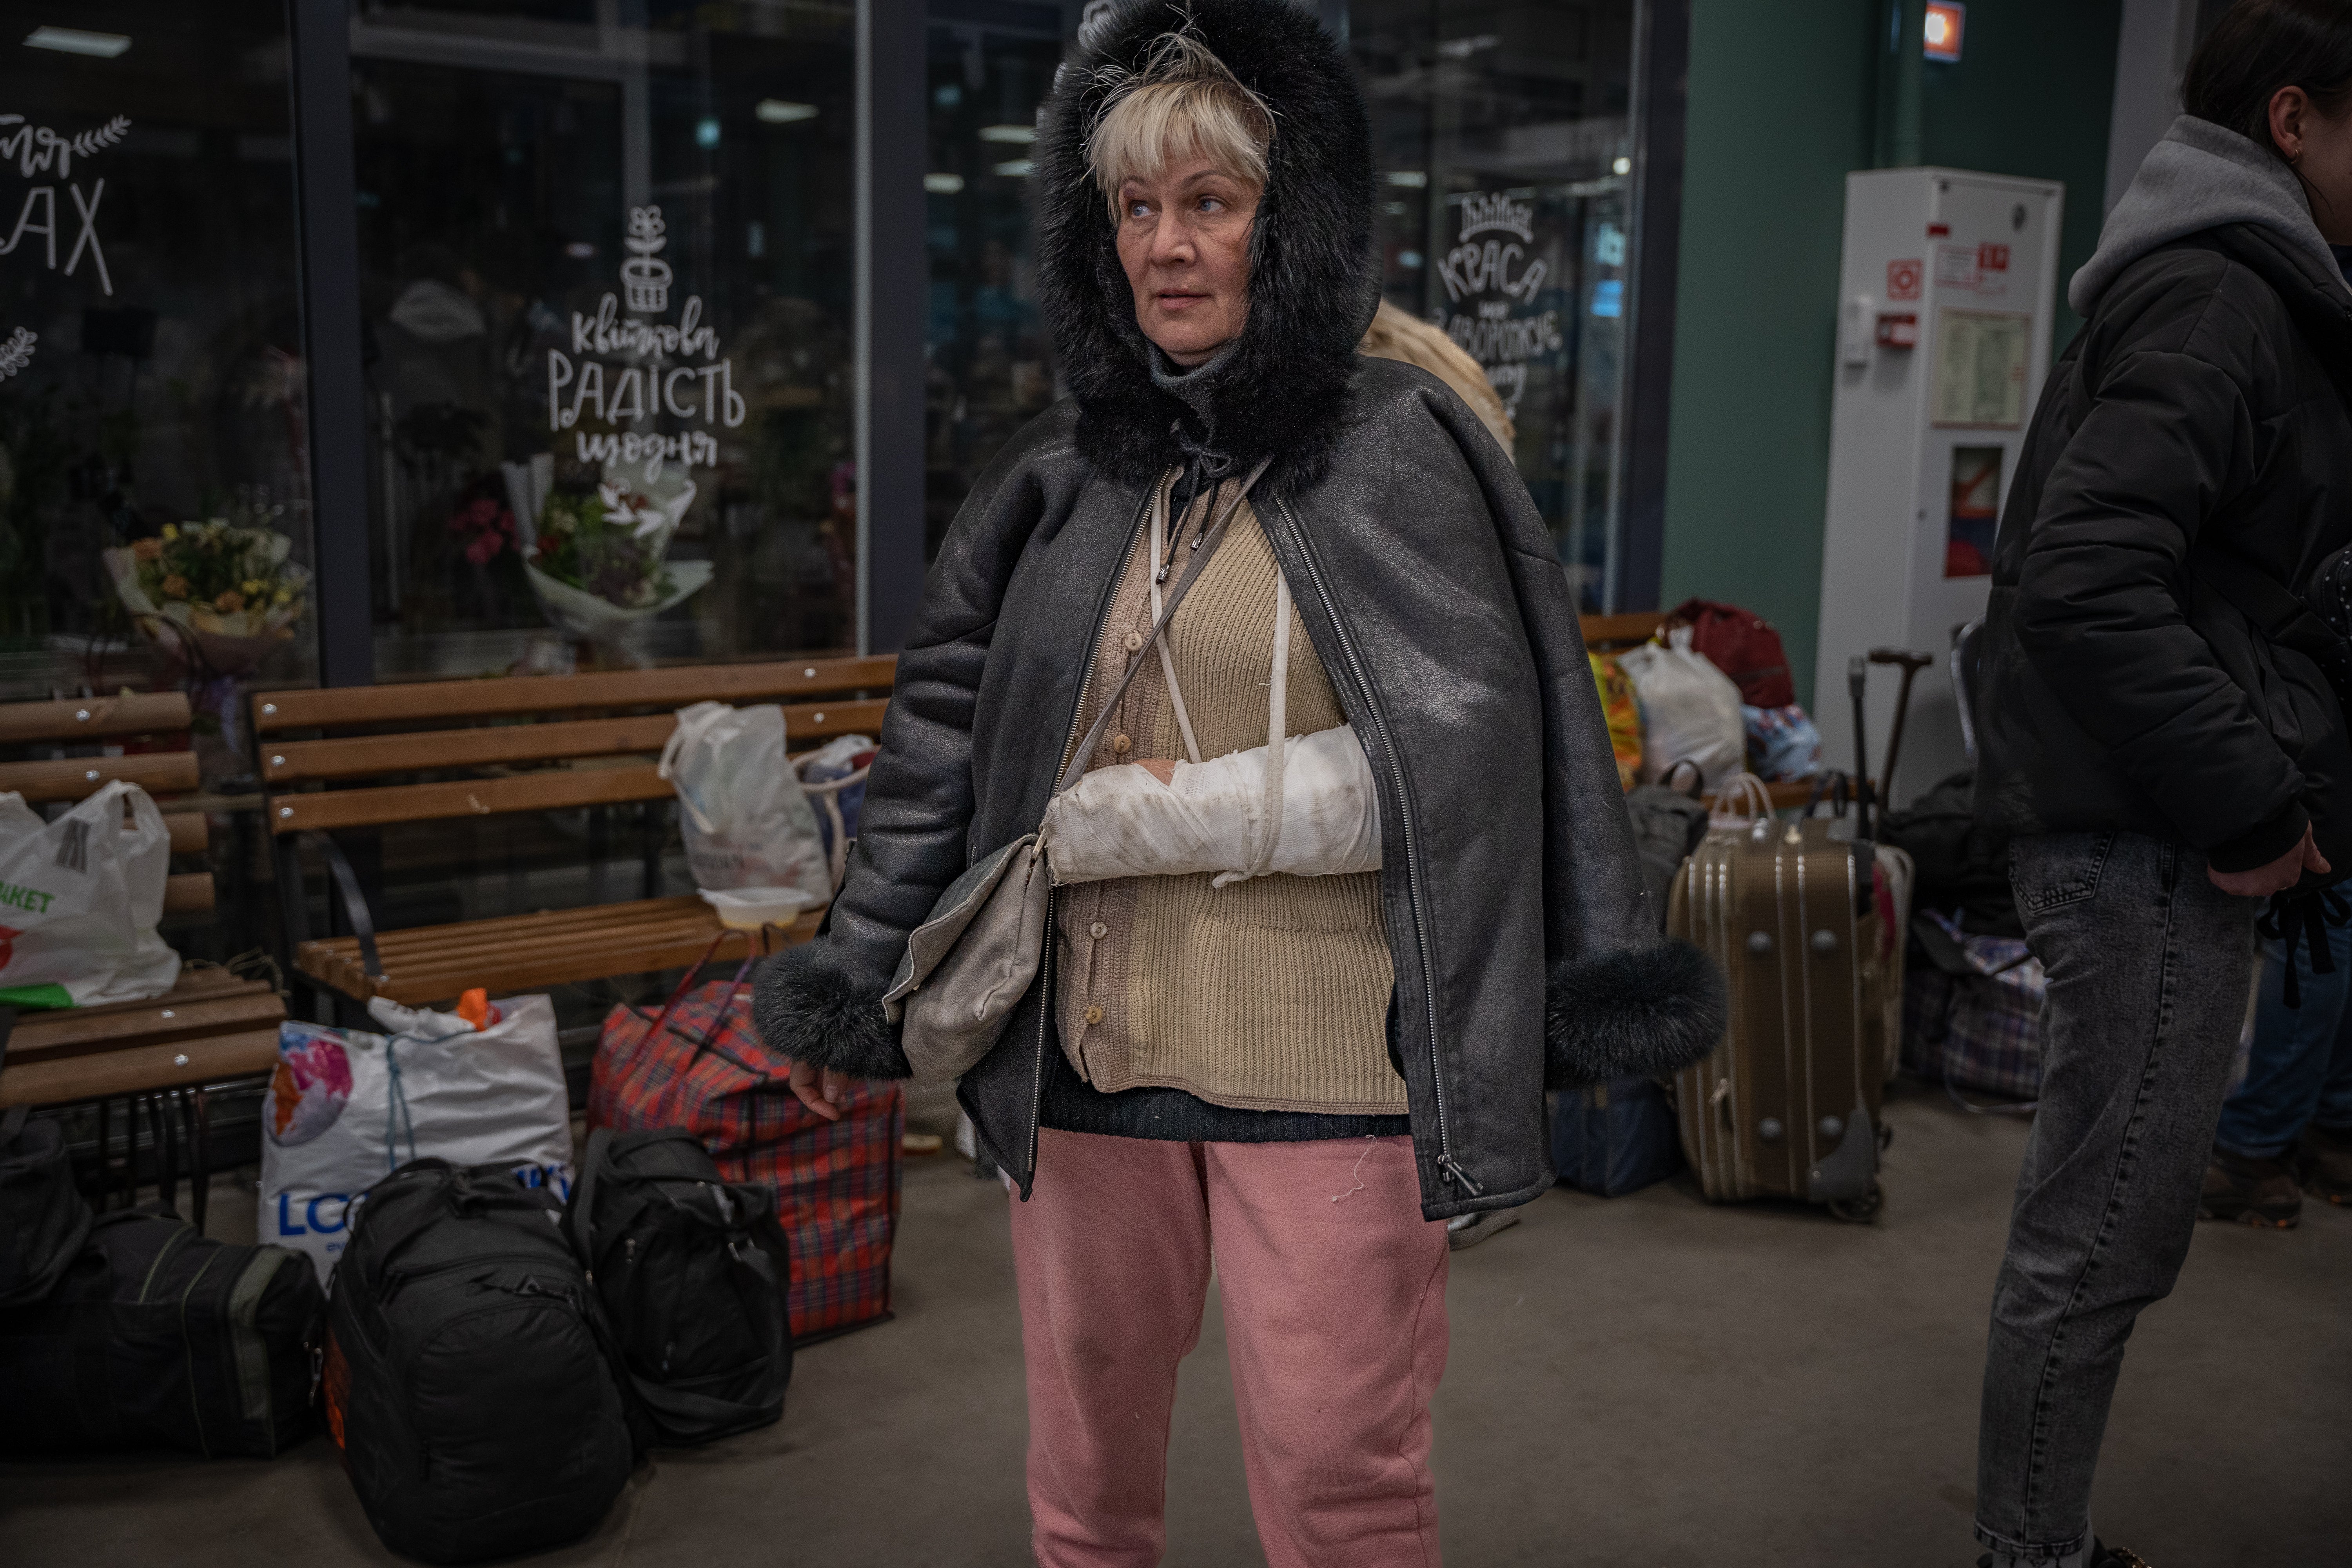 Una mujer herida en Mariúpol llega a un centro de acogida gestionado por voluntarios en Zaporizhzhia